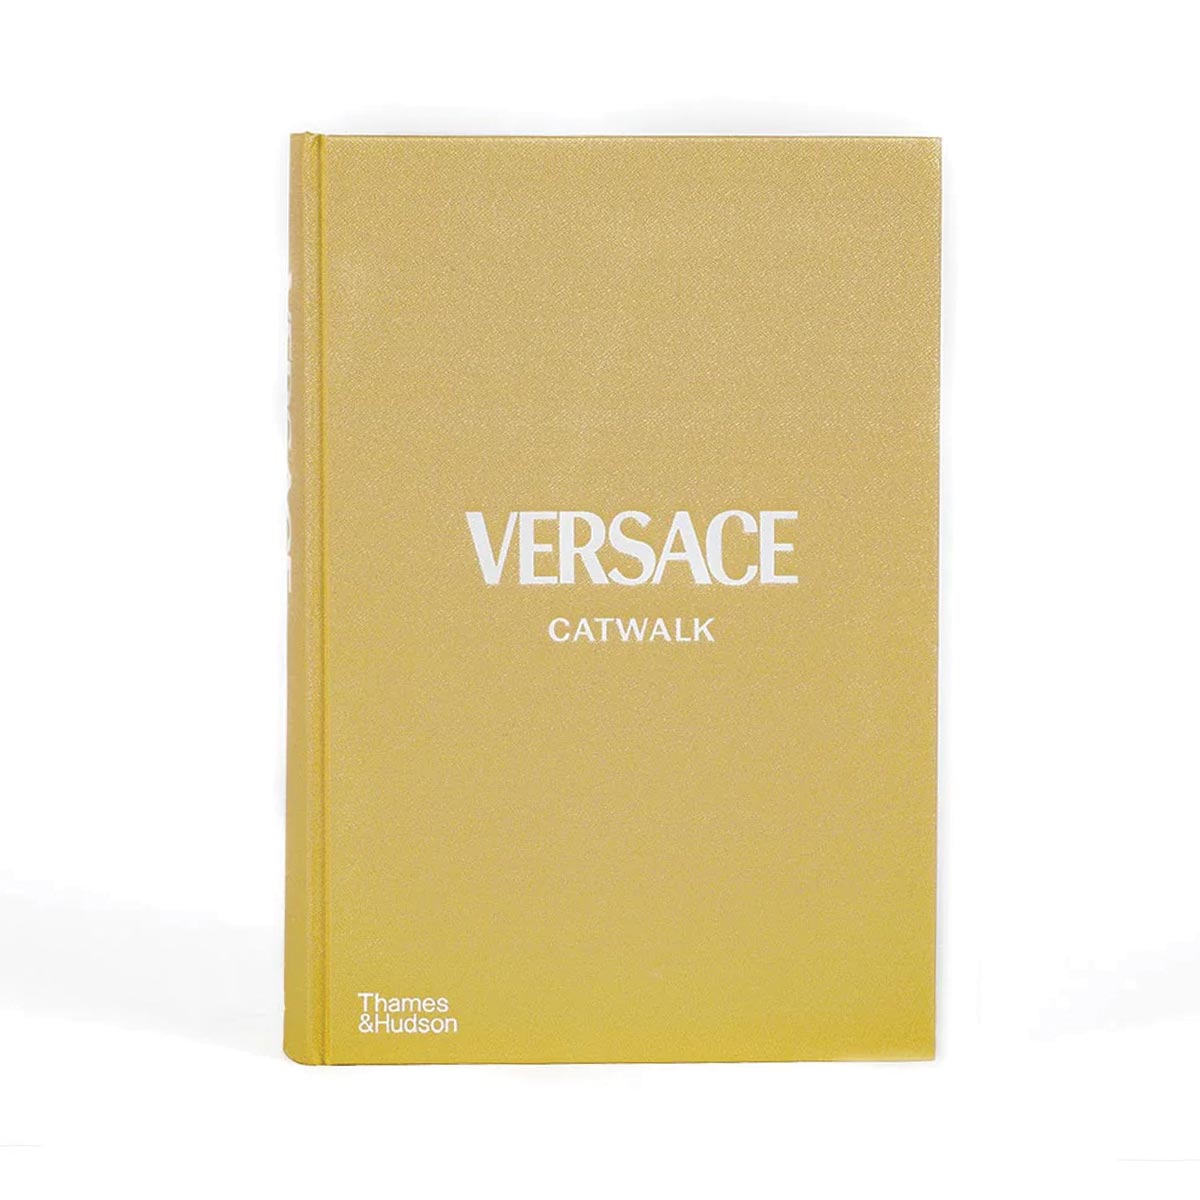 Buy Versace Catwalk Book online in India – Home4u